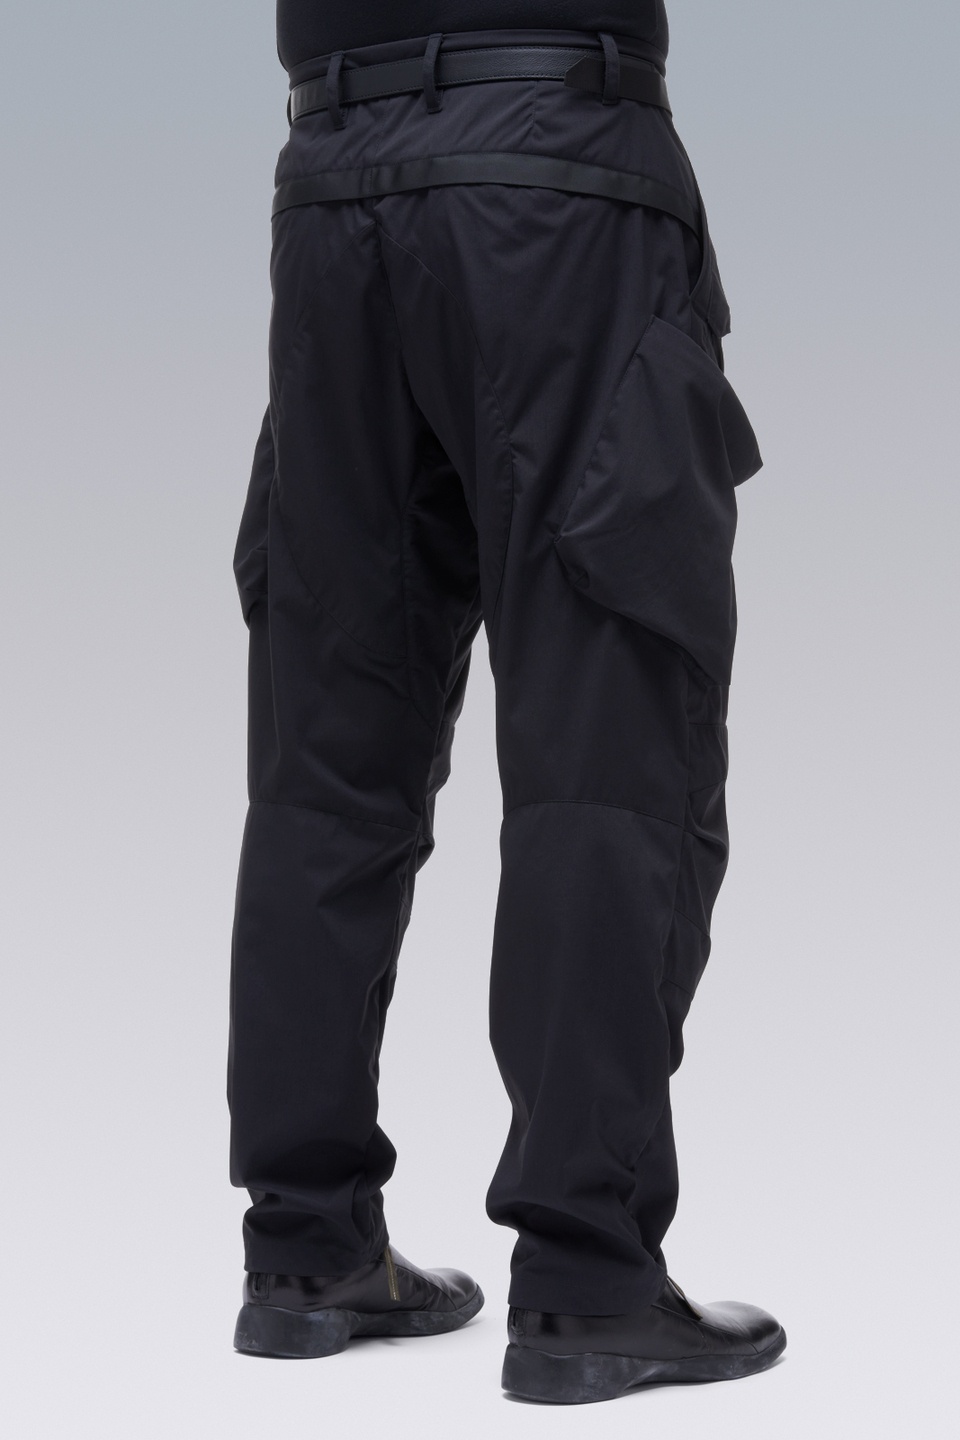 P24A-E Encapsulated Nylon Articulated BDU Trouser Black - 5